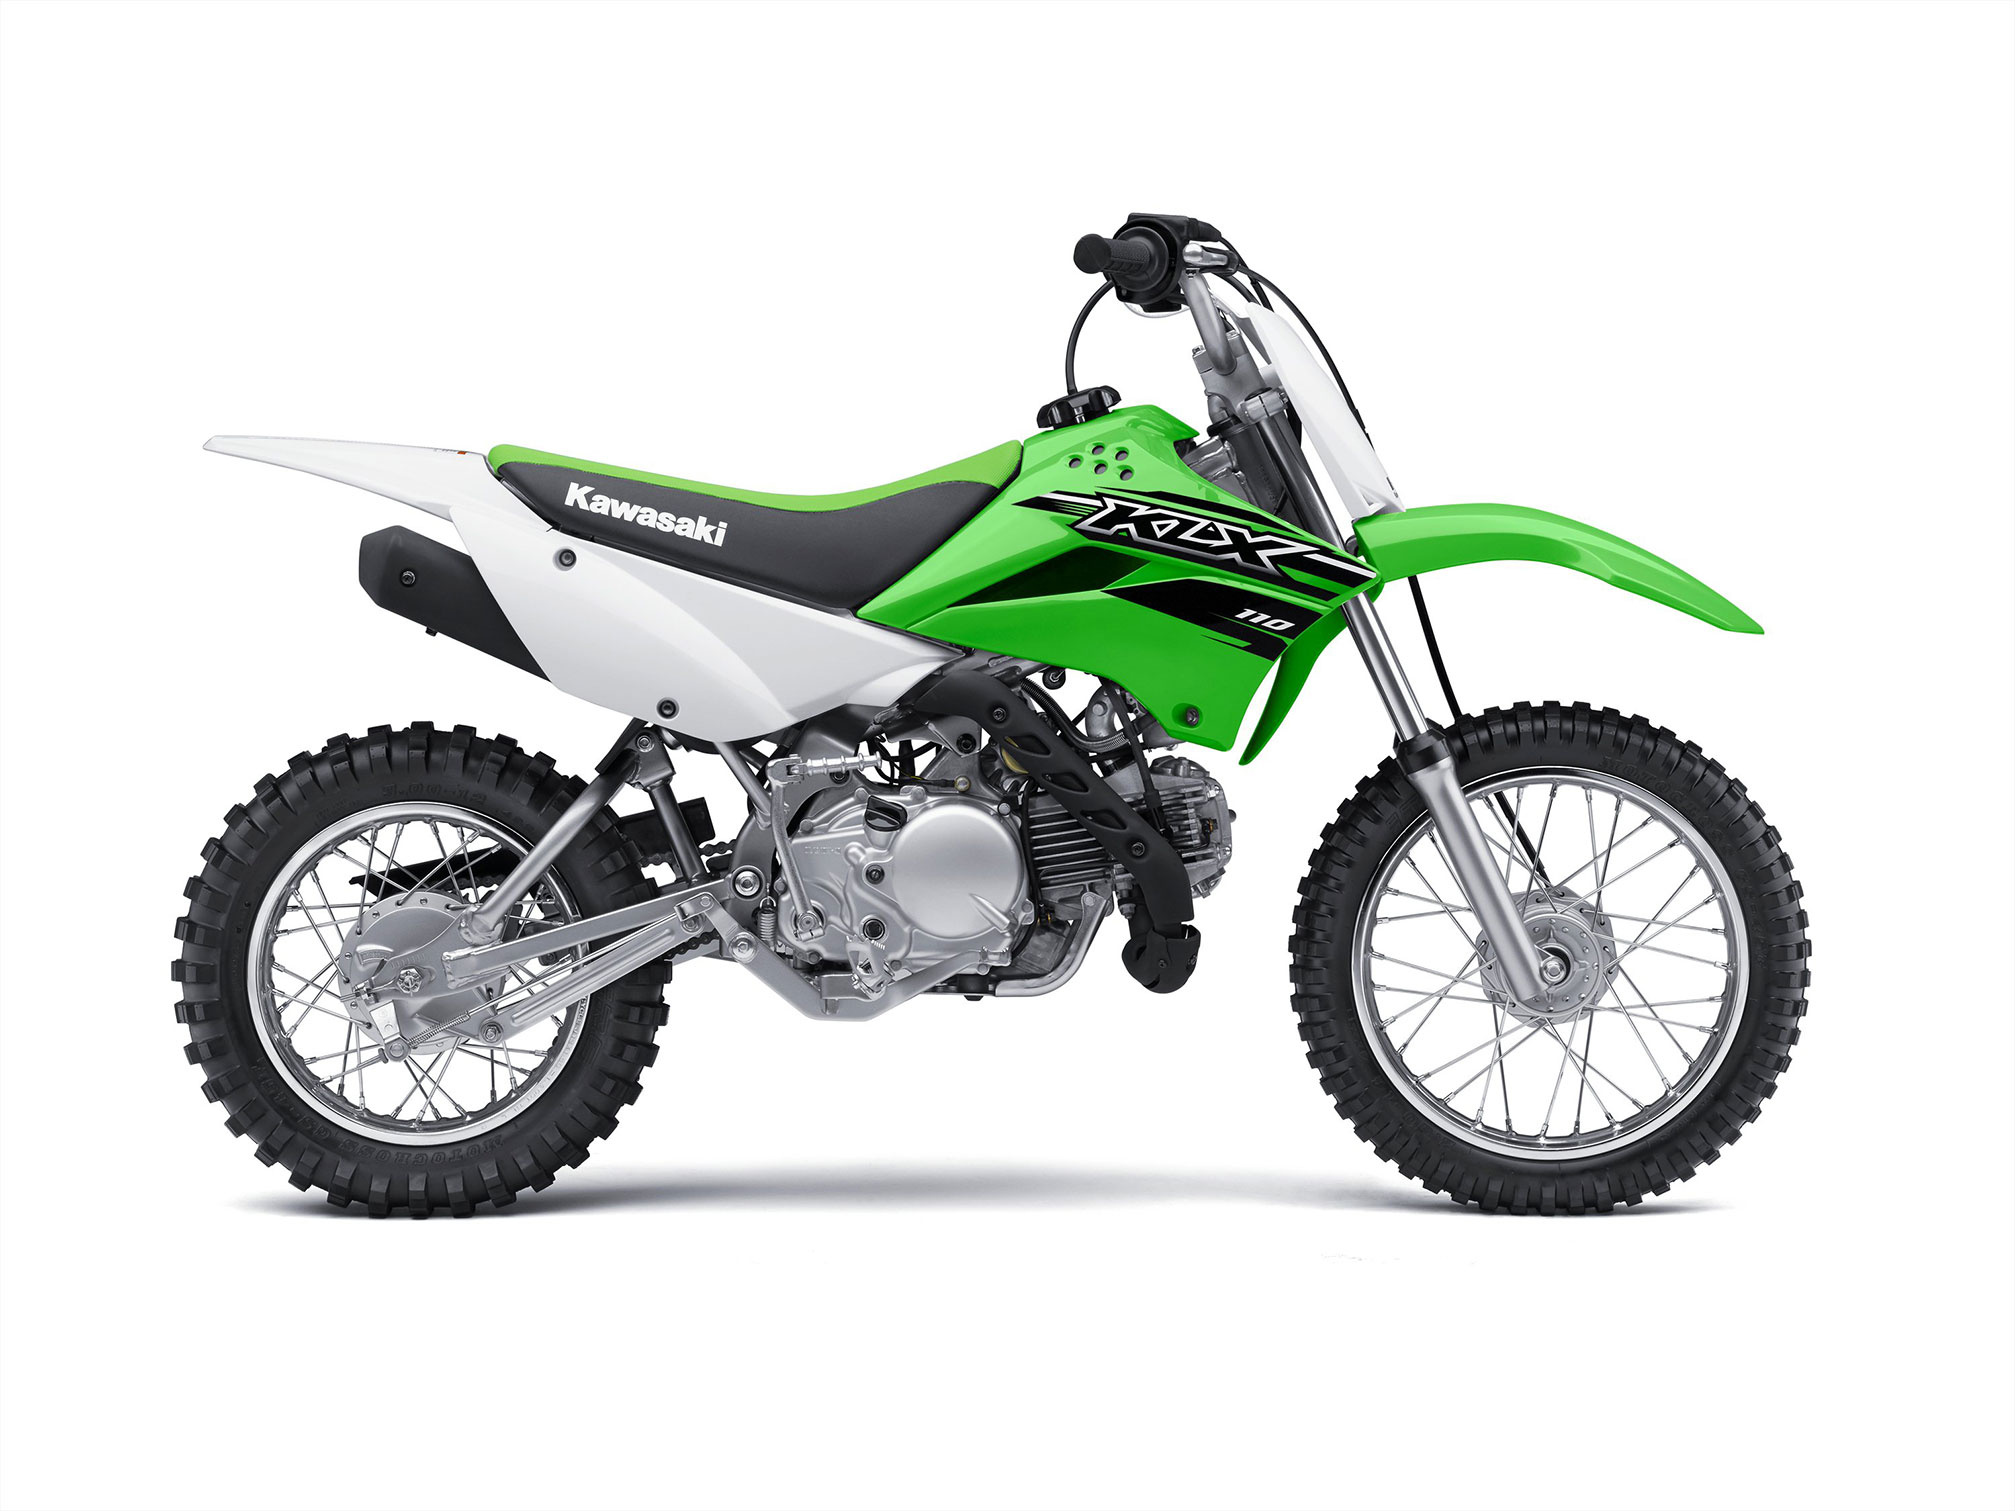 2015 Kawasaki KLX110, Review, 2020x1520 HD Desktop